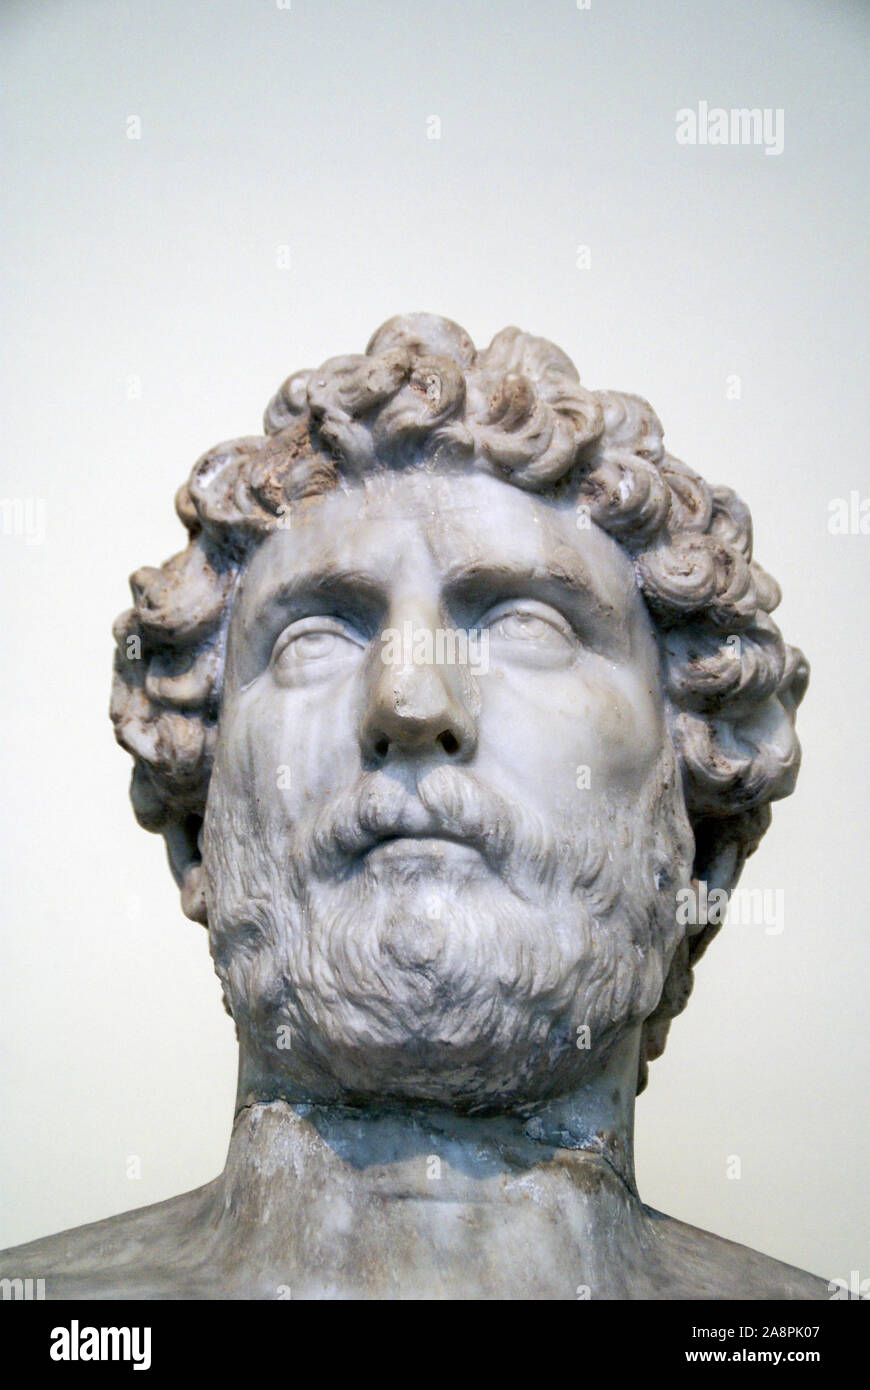 Kosmetes (magistrat) Sosistratos. Buste ou tête d'un homme statue - Musée Archéologique National, Athènes, Grèce Banque D'Images